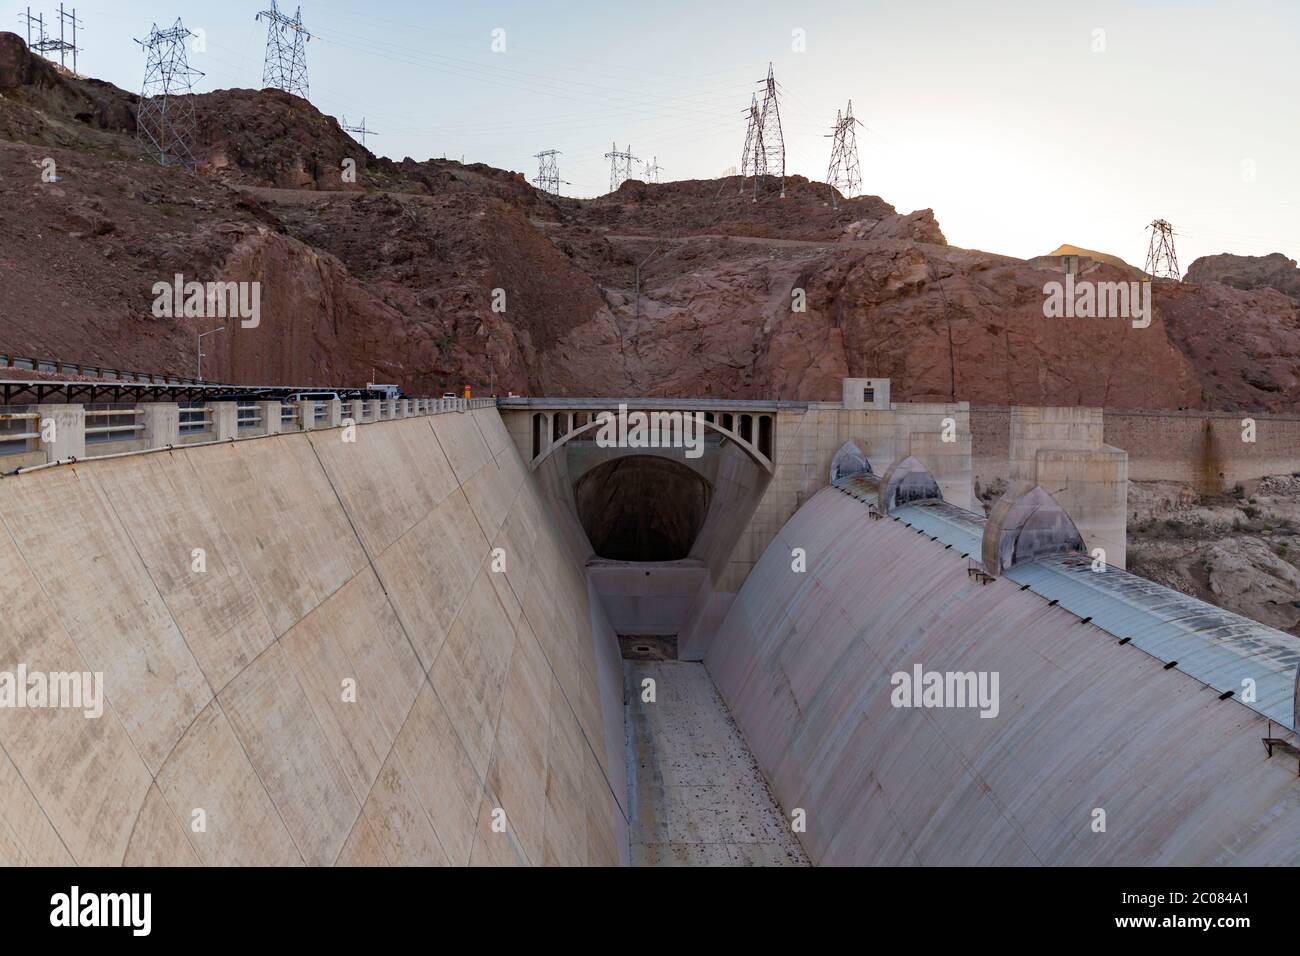 11 ottobre 2017, Black Canyon, Nevada e Arizona, U.S: Hoover Dam è una diga di cemento a gravità-arco nel Black Canyon del fiume Colorado, al confine tra gli Stati Uniti del Nevada e Arizona. Fu costruita tra il 1931 e il 1936 durante la Grande depressione e fu dedicata il 30 settembre 1935 dal presidente Franklin D. Roosevelt. La sua costruzione è stata il risultato di un massiccio sforzo che ha coinvolto migliaia di lavoratori, e costato oltre cento vite. Originariamente conosciuta come Boulder Dam dal 1933, fu ufficialmente ribattezzata Hoover Dam per il presidente Herbert Hoover con una risoluzione comune di Foto Stock